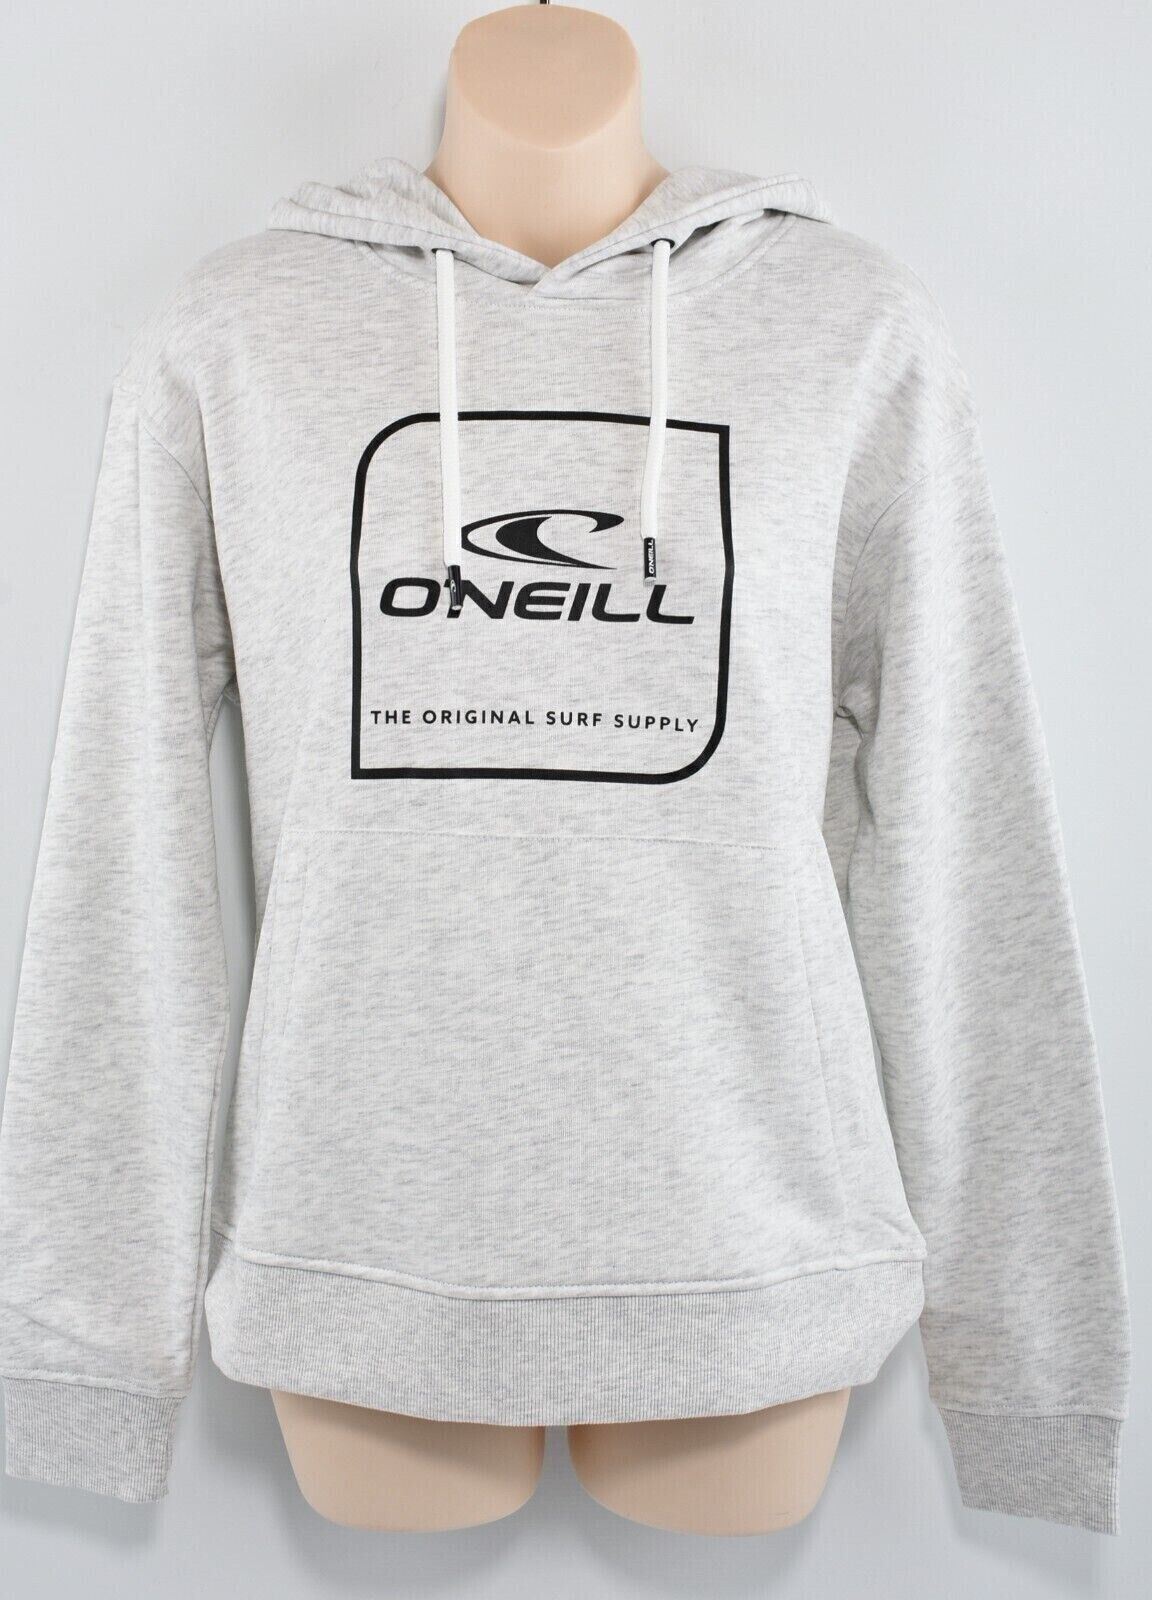 O'NEILL Women's CUBE Hoodie, Hooded Sweatshirt, White/Grey Melange, size L /14